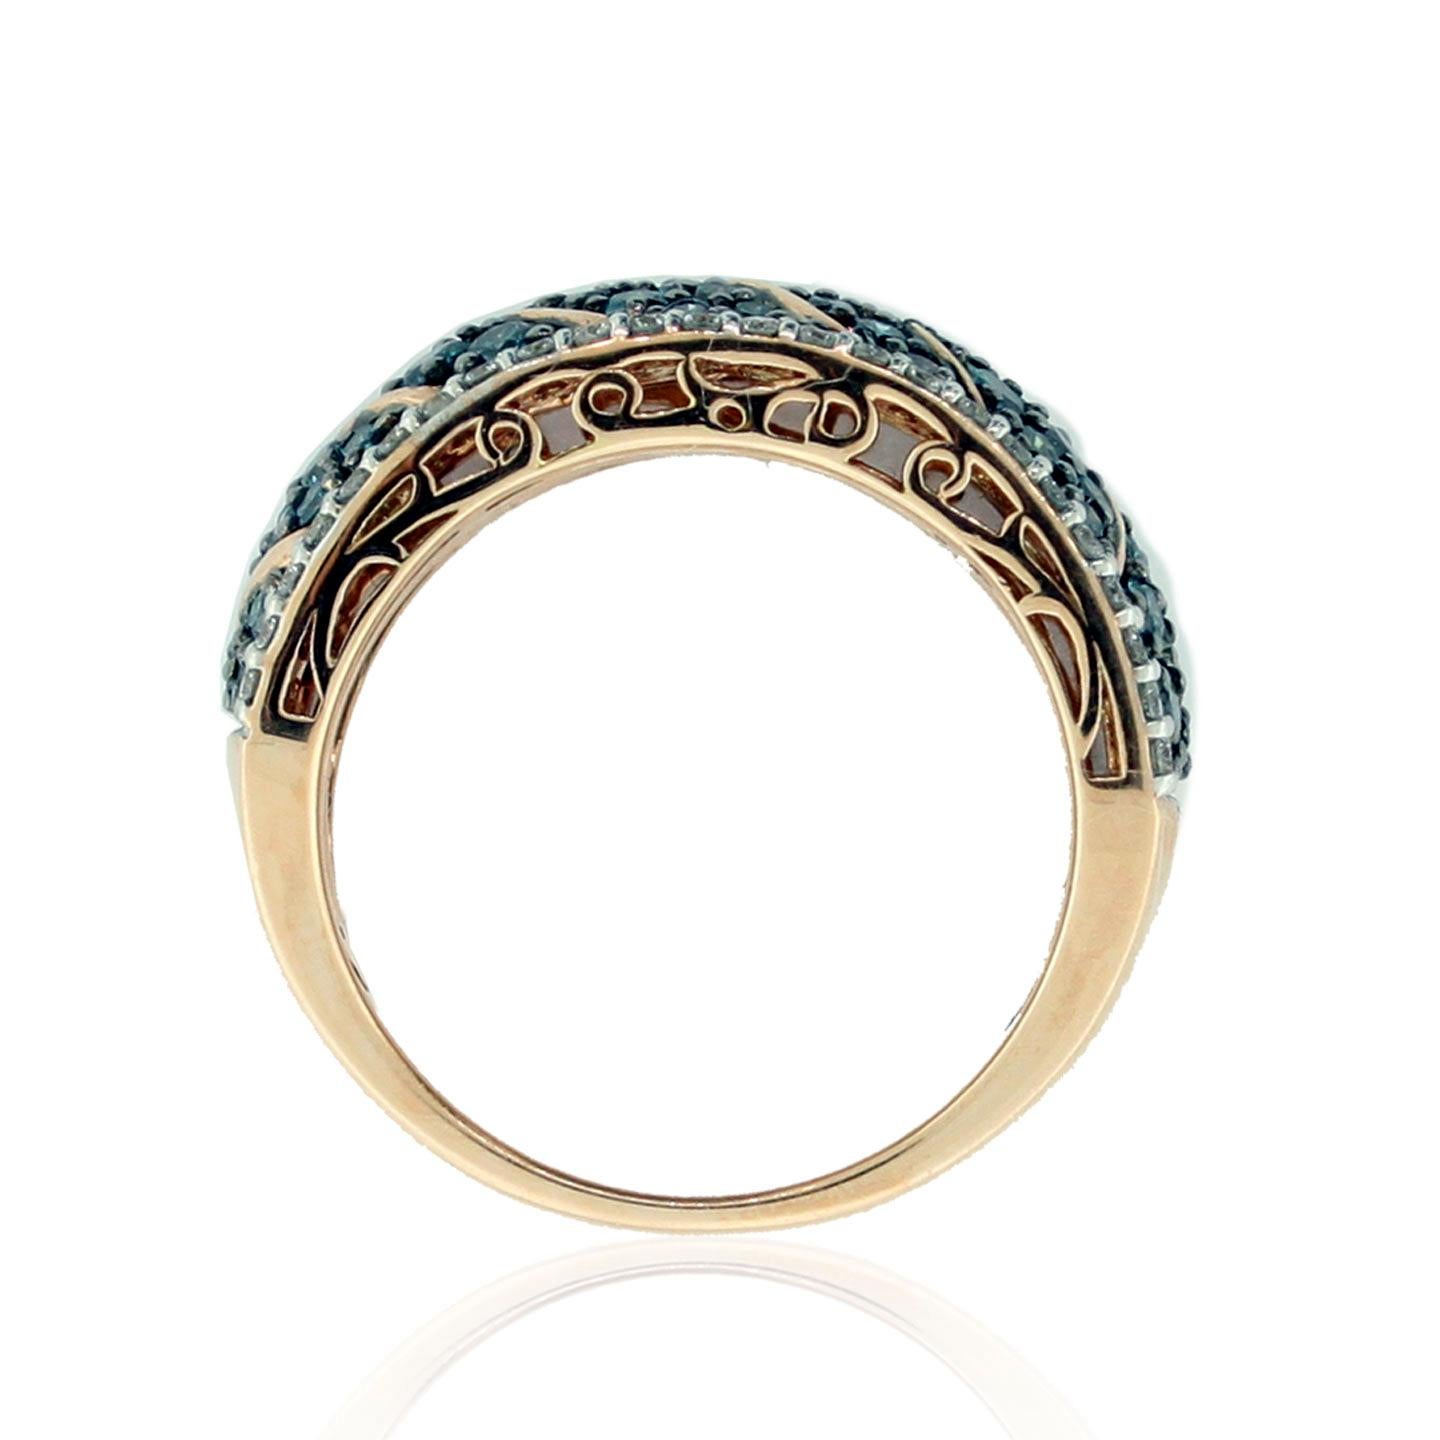 Cette bague spectaculaire de la collection Suzy Levian Limited Edition présente un motif ondulé de diamants en or rose 14k . Un ensemble de diamants bleus et blancs (1,62cttw) accentue la couleur parfaite de l'or rose de la bague. La brillance de